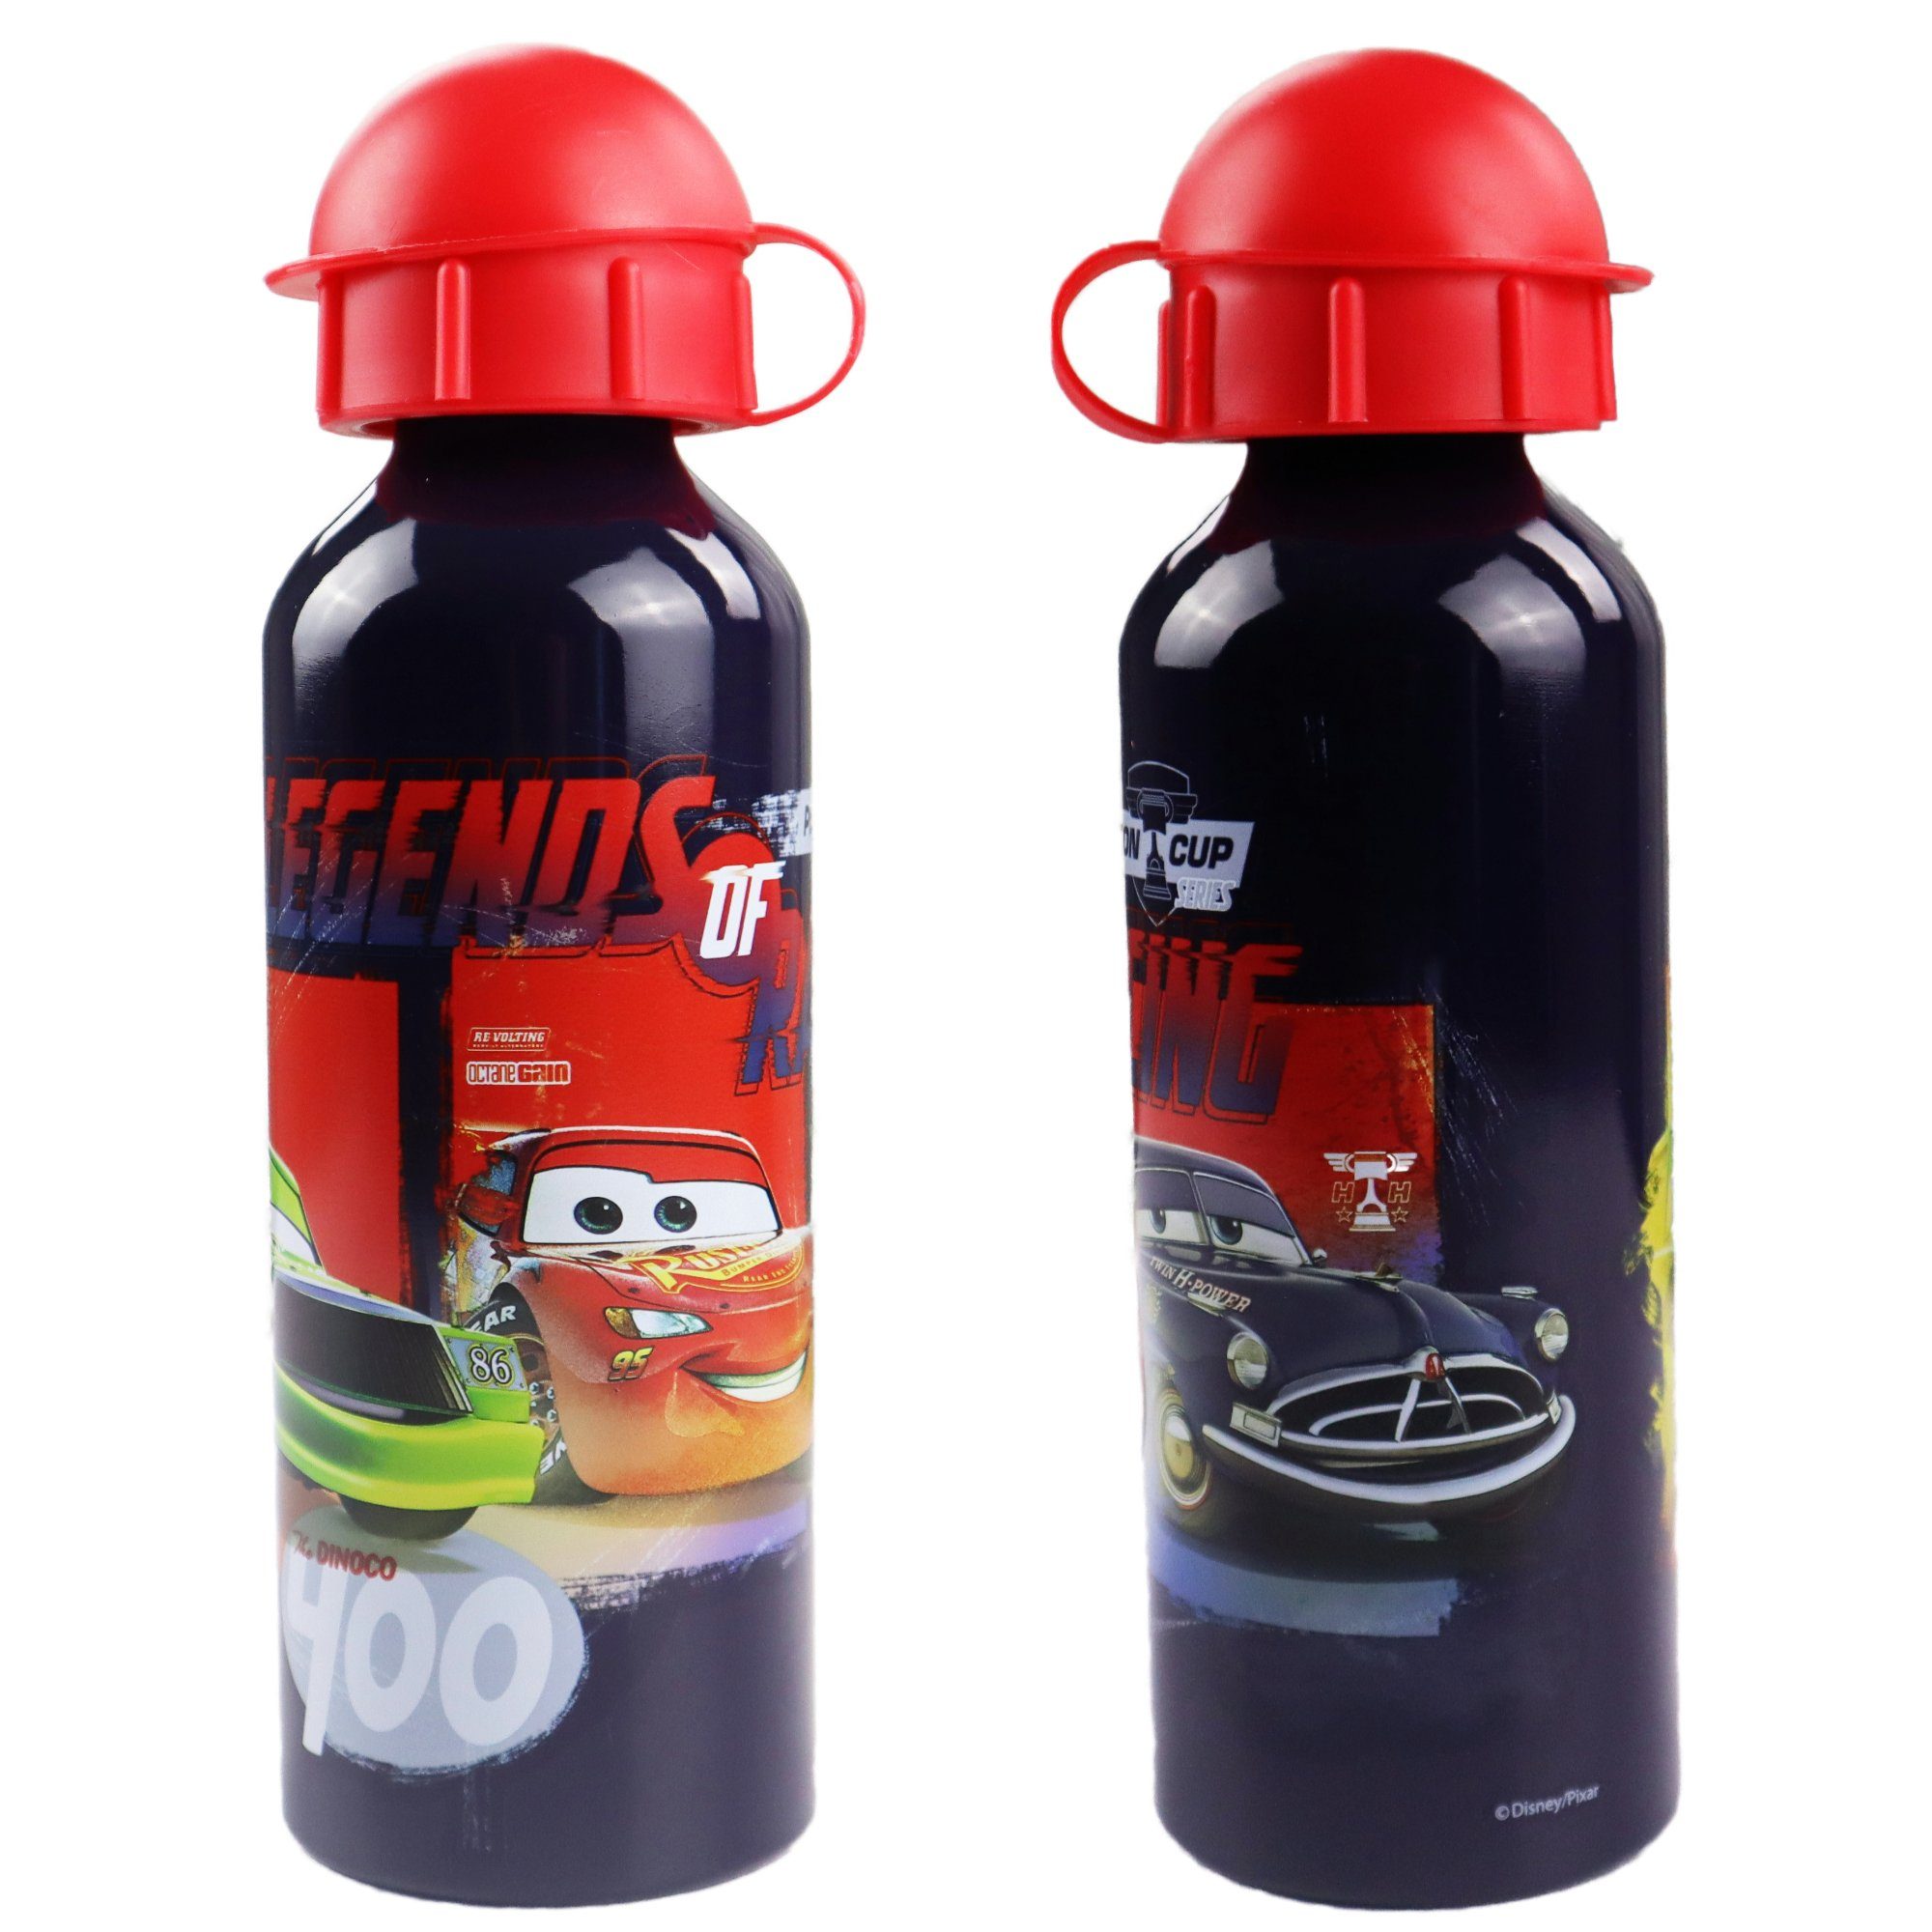 Disney Trinkflasche Disney Cars Lightning McQueen Aluminium Wasserflasche, 520 ml